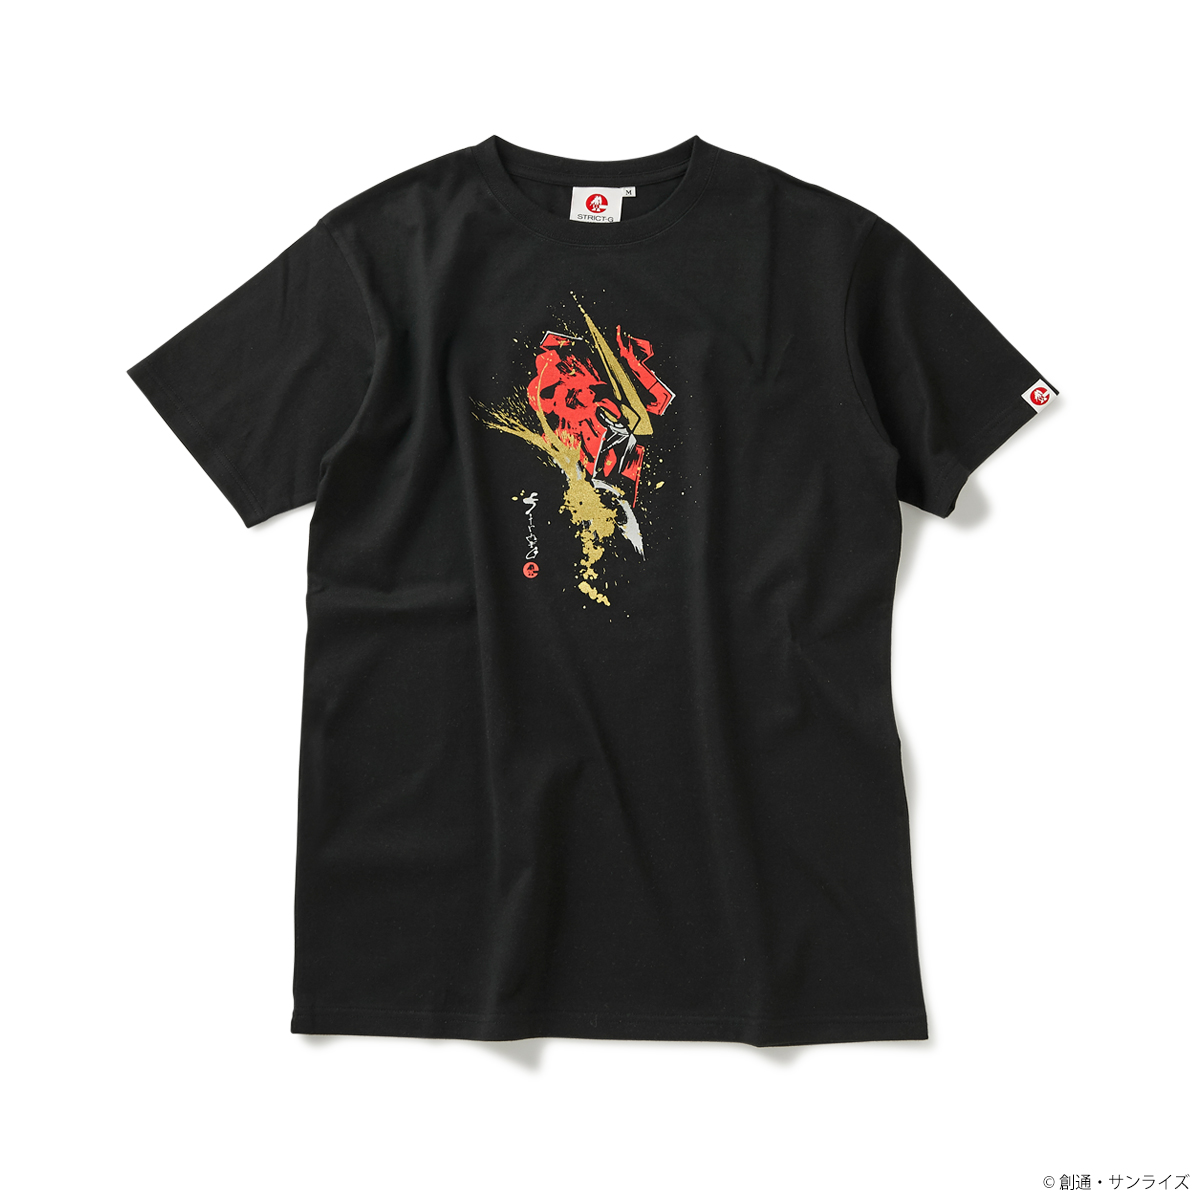 STRICT-G JAPAN 『機動戦士ガンダムSEED』 Tシャツ 筆絵風ジャスティスガンダム柄